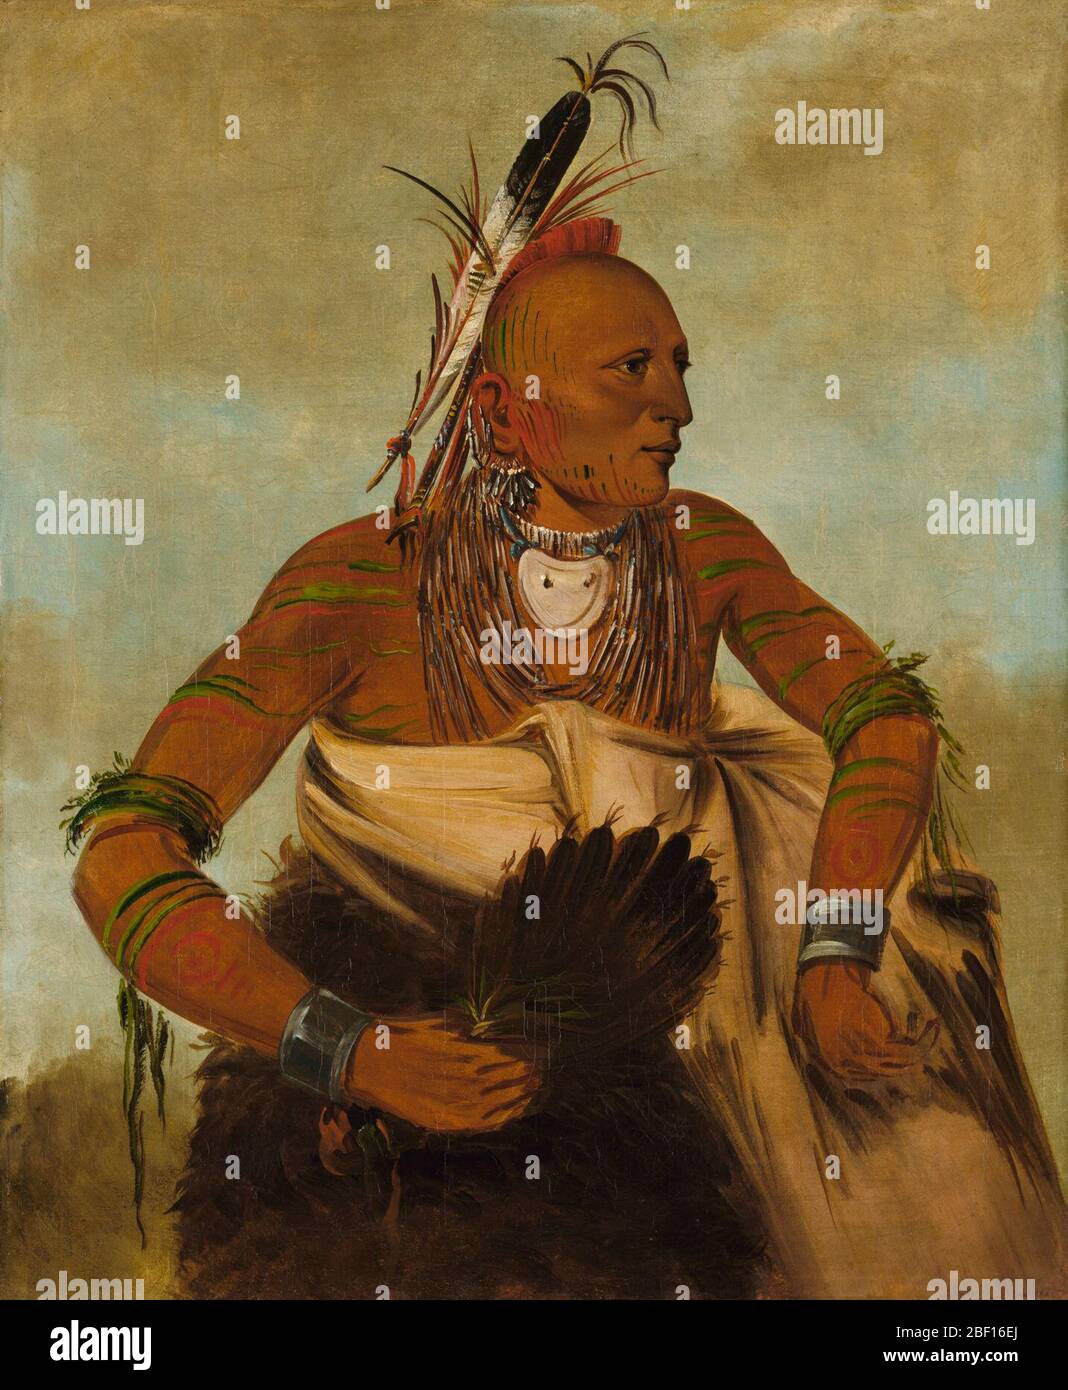 Wahobckee ein schöner tapferer. Dieses Mitglied des Stammes der Osage saß für sein Porträt in charakteristischen Stammesmarkierungen, darunter ein bemalter und rasierte Kopf sowie ein bemalter Oberkörper. Stockfoto